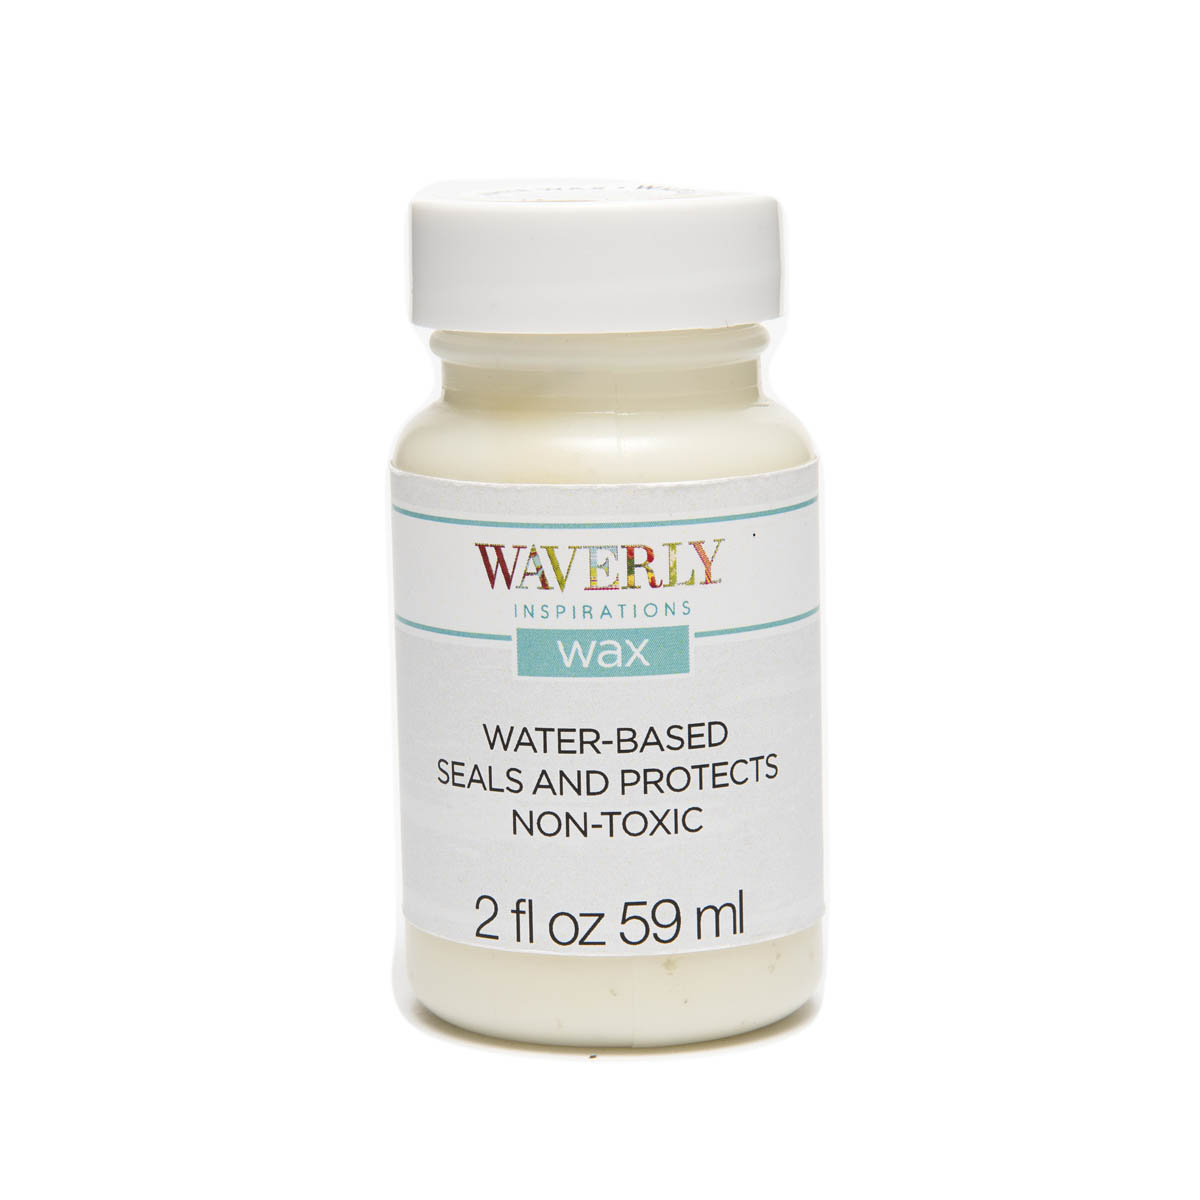  Waverly Wax